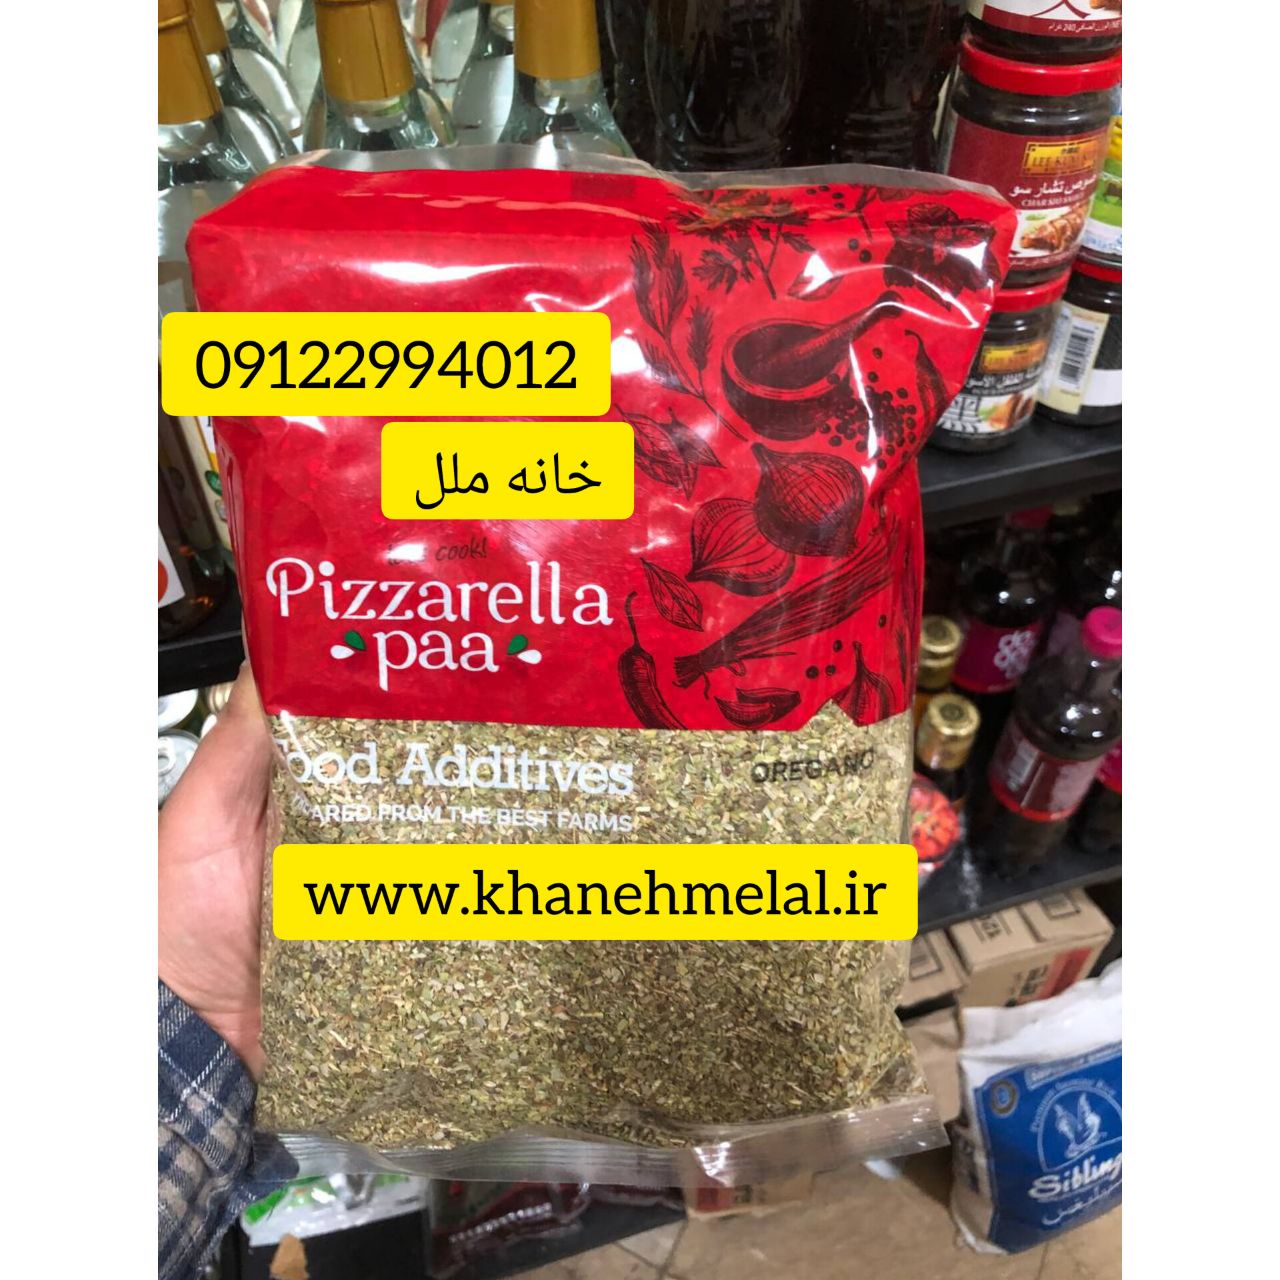 اادویه ارگانو (اورگانو ) پیزارلا (pizzarelaa paa) 500 گرمی